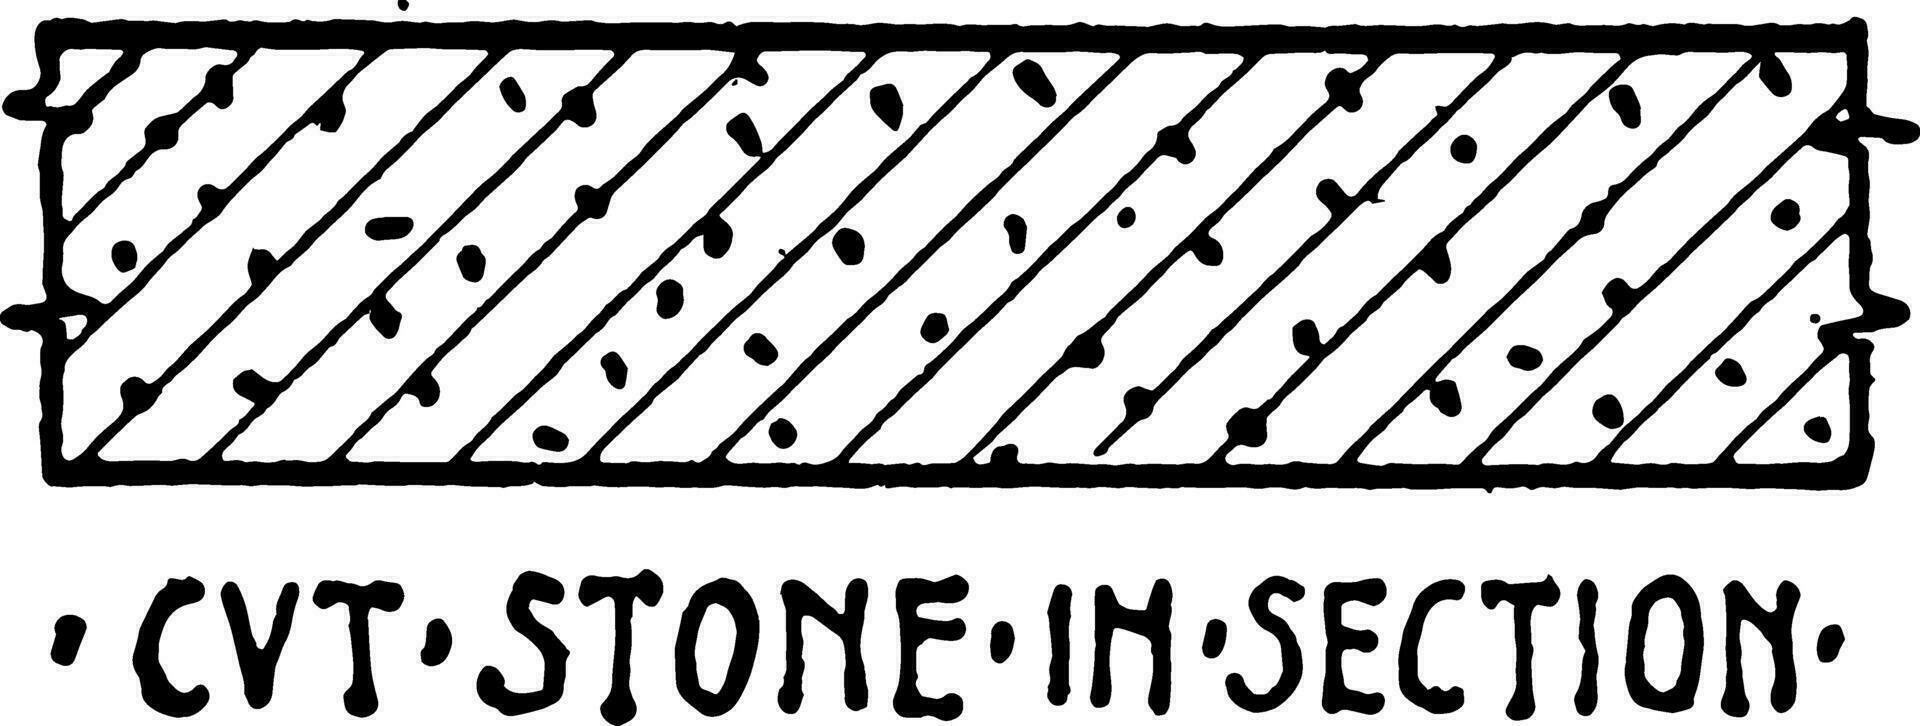 cvt pierre dans section Matériel symbole branches sont utilisé ancien gravure. vecteur